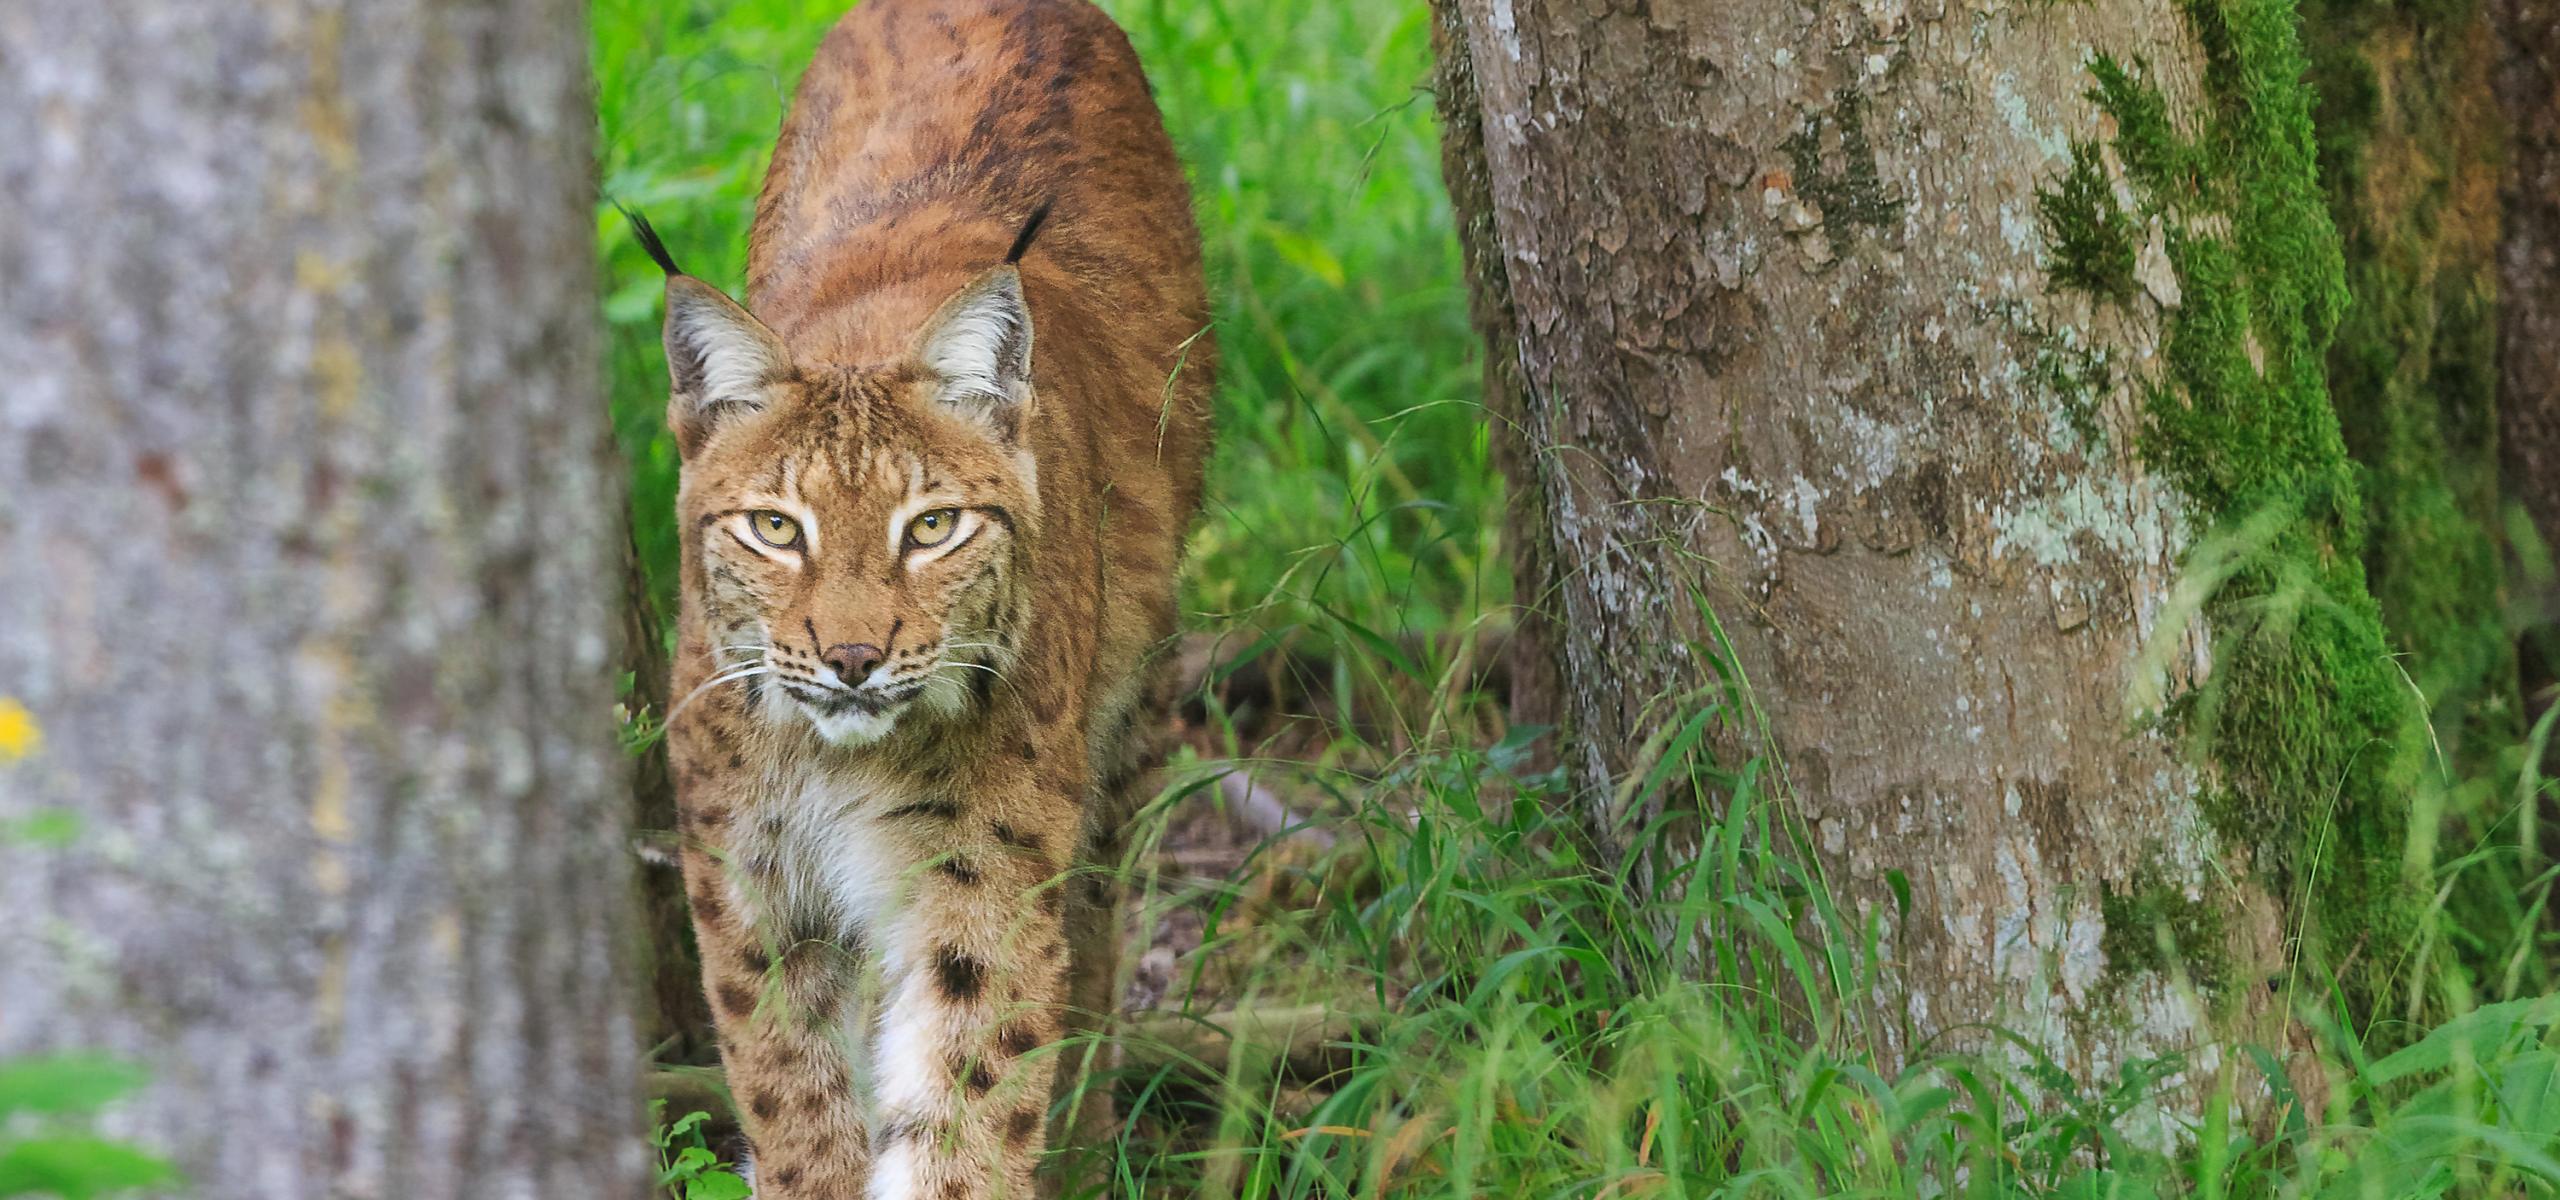 Lynx roams between trees through tall grass